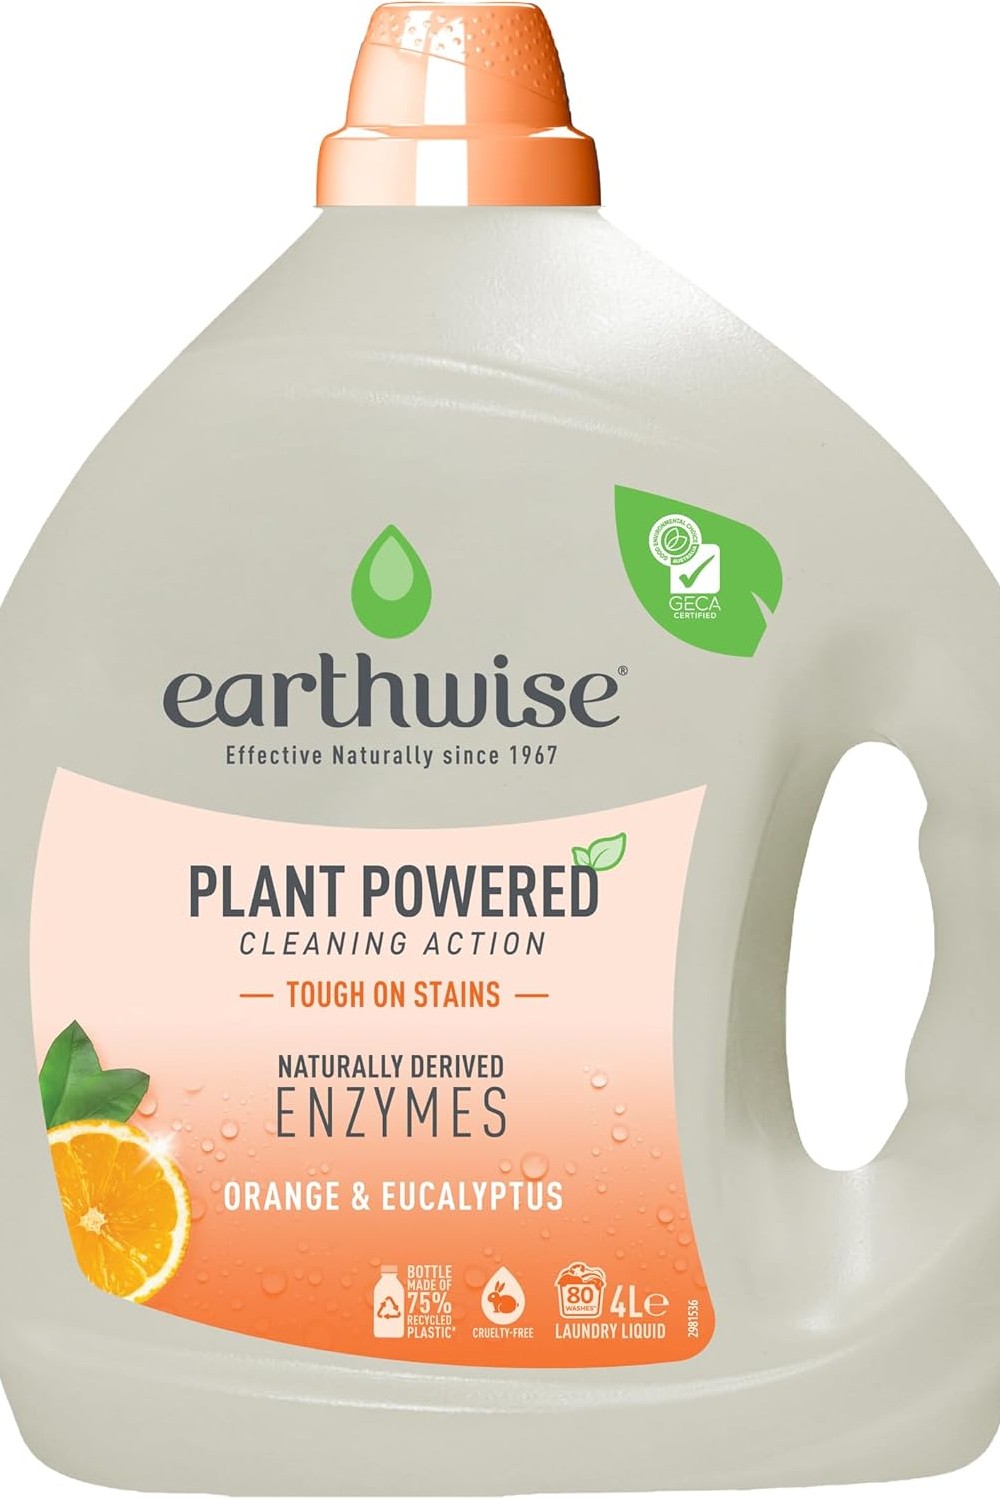 2. Earthwise Orange & Eucalyptus Laundry Washing Detergent Liquid